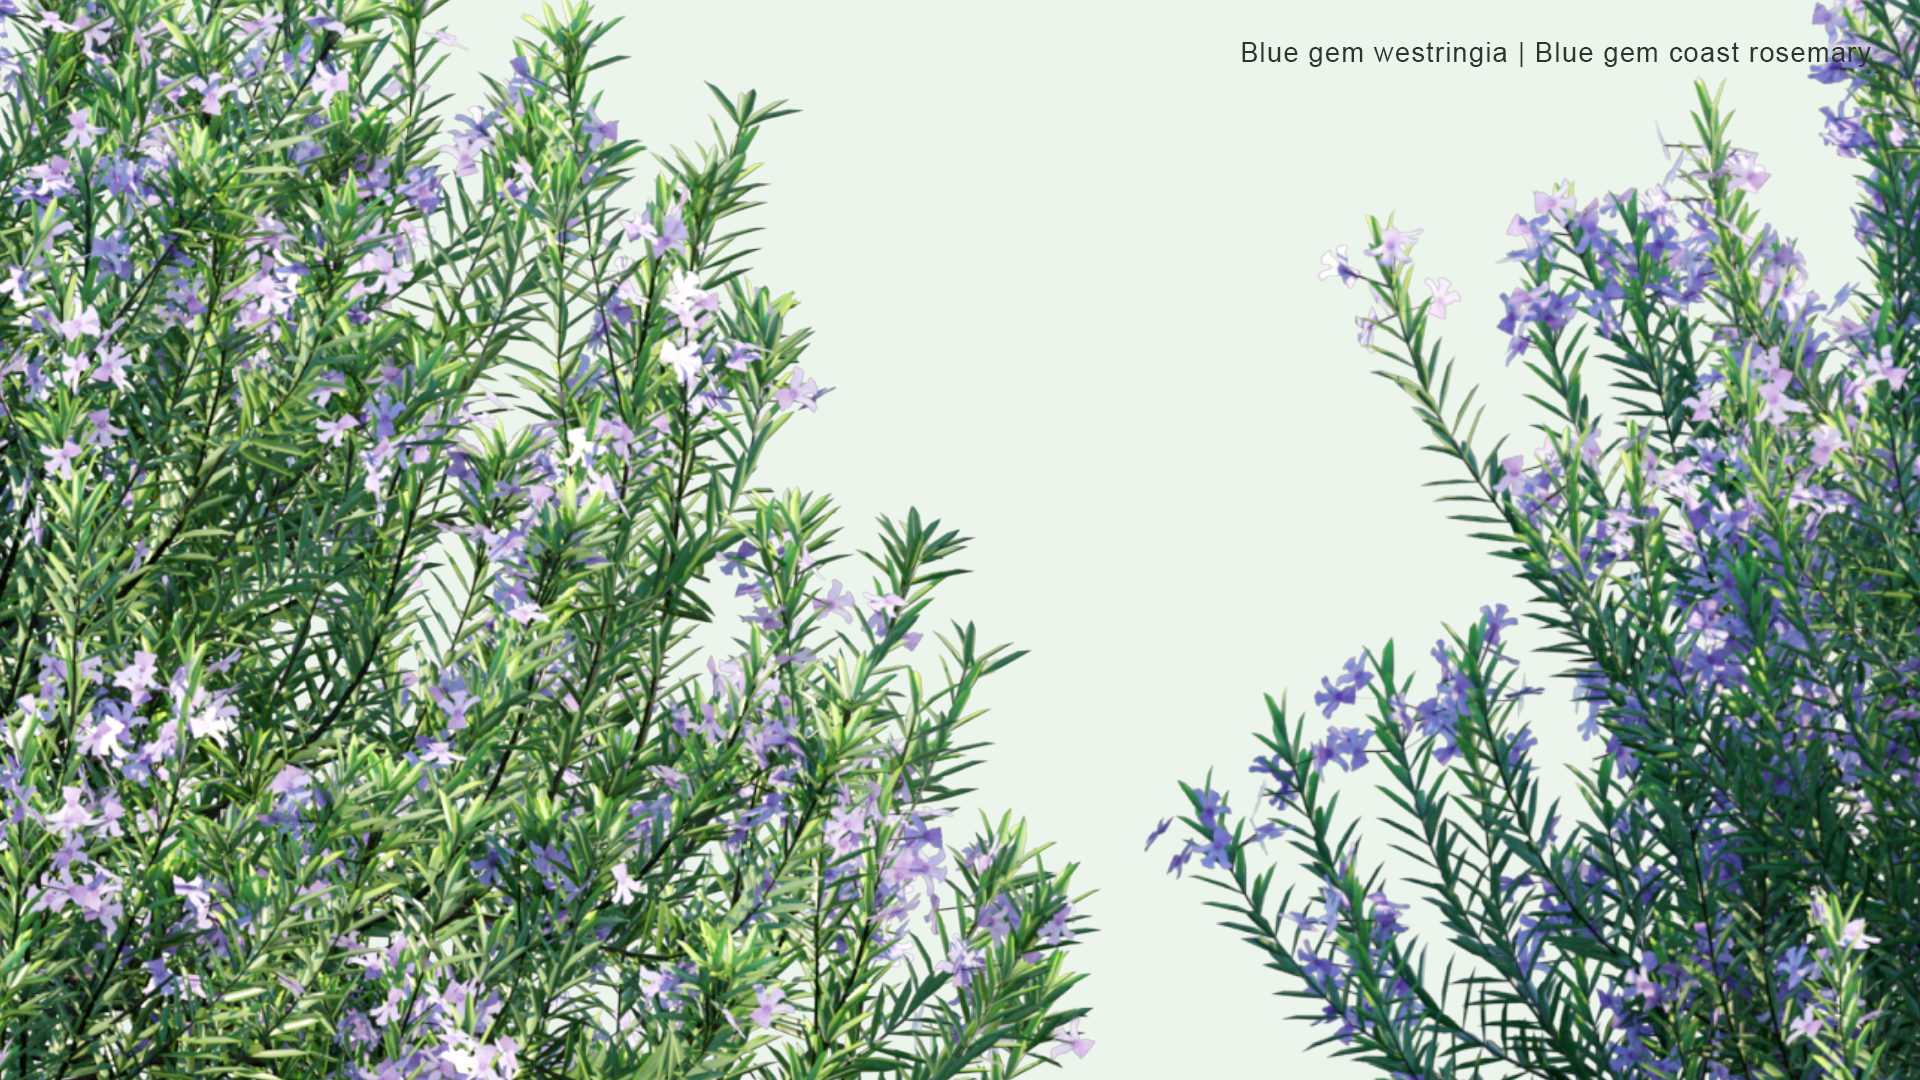 2D Blue Gem Westringia - Blue Gem Coast Rosemary